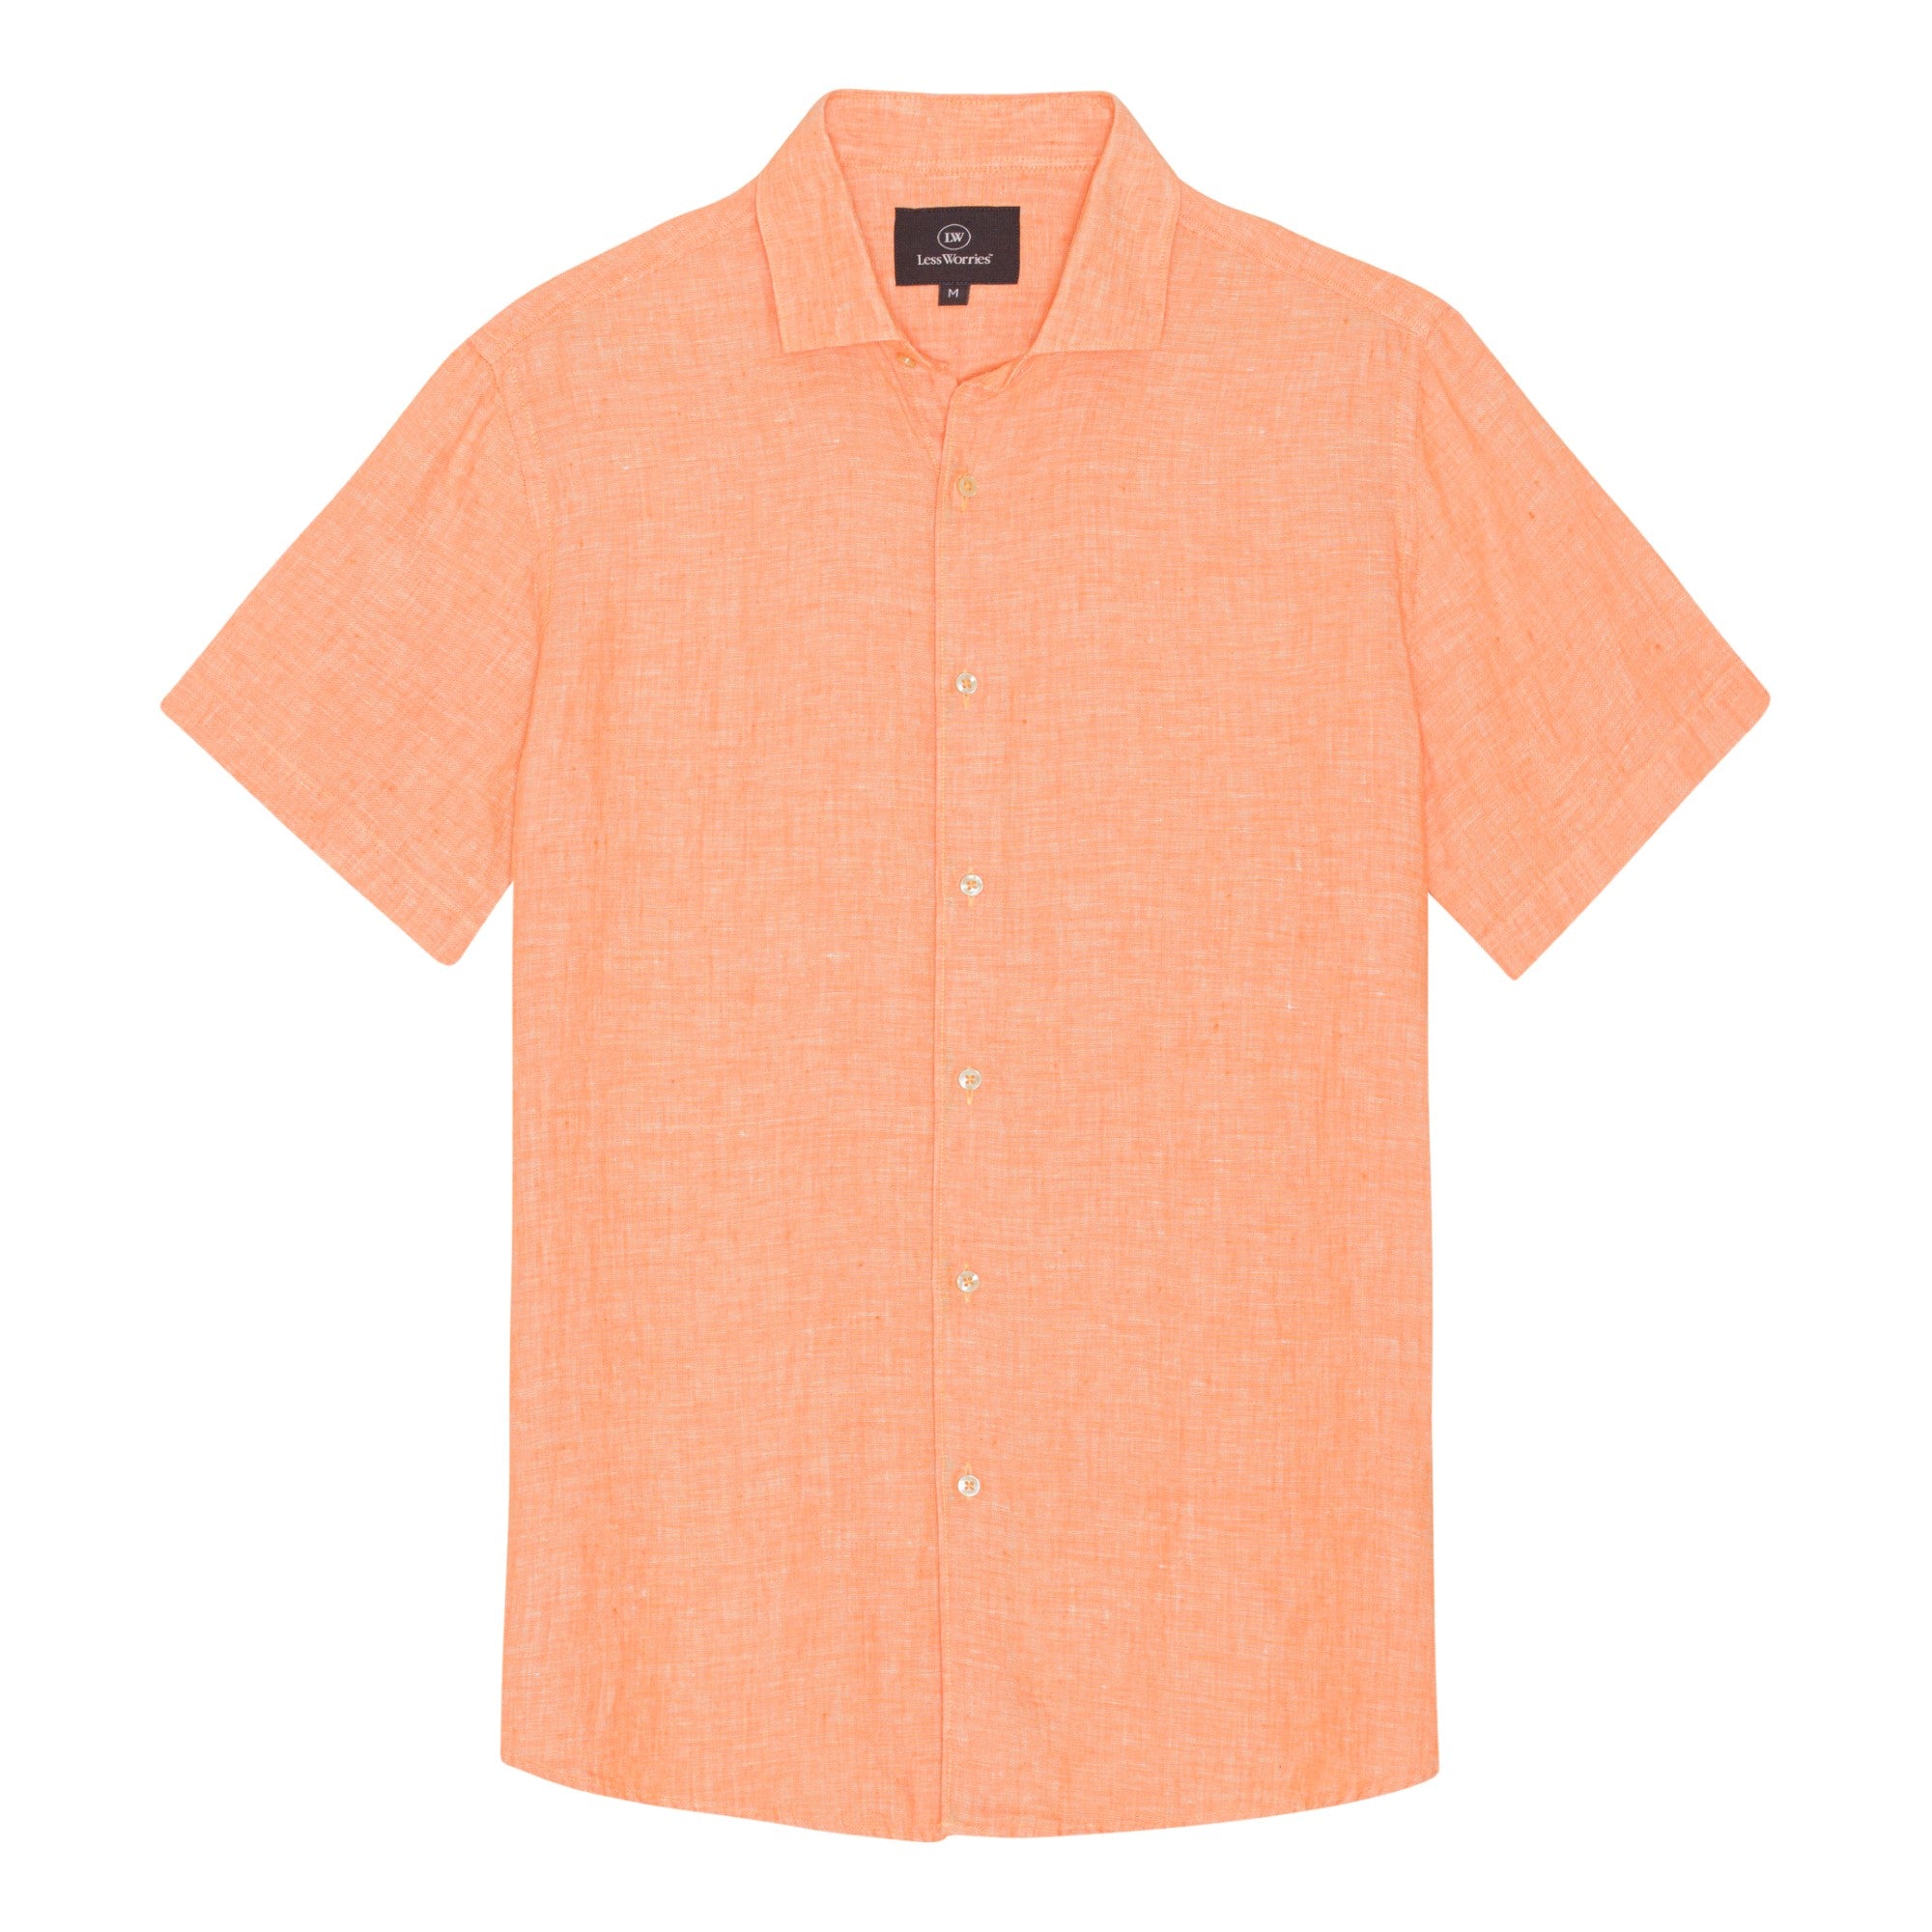 Apricot Linen Shirt Short-sleeved